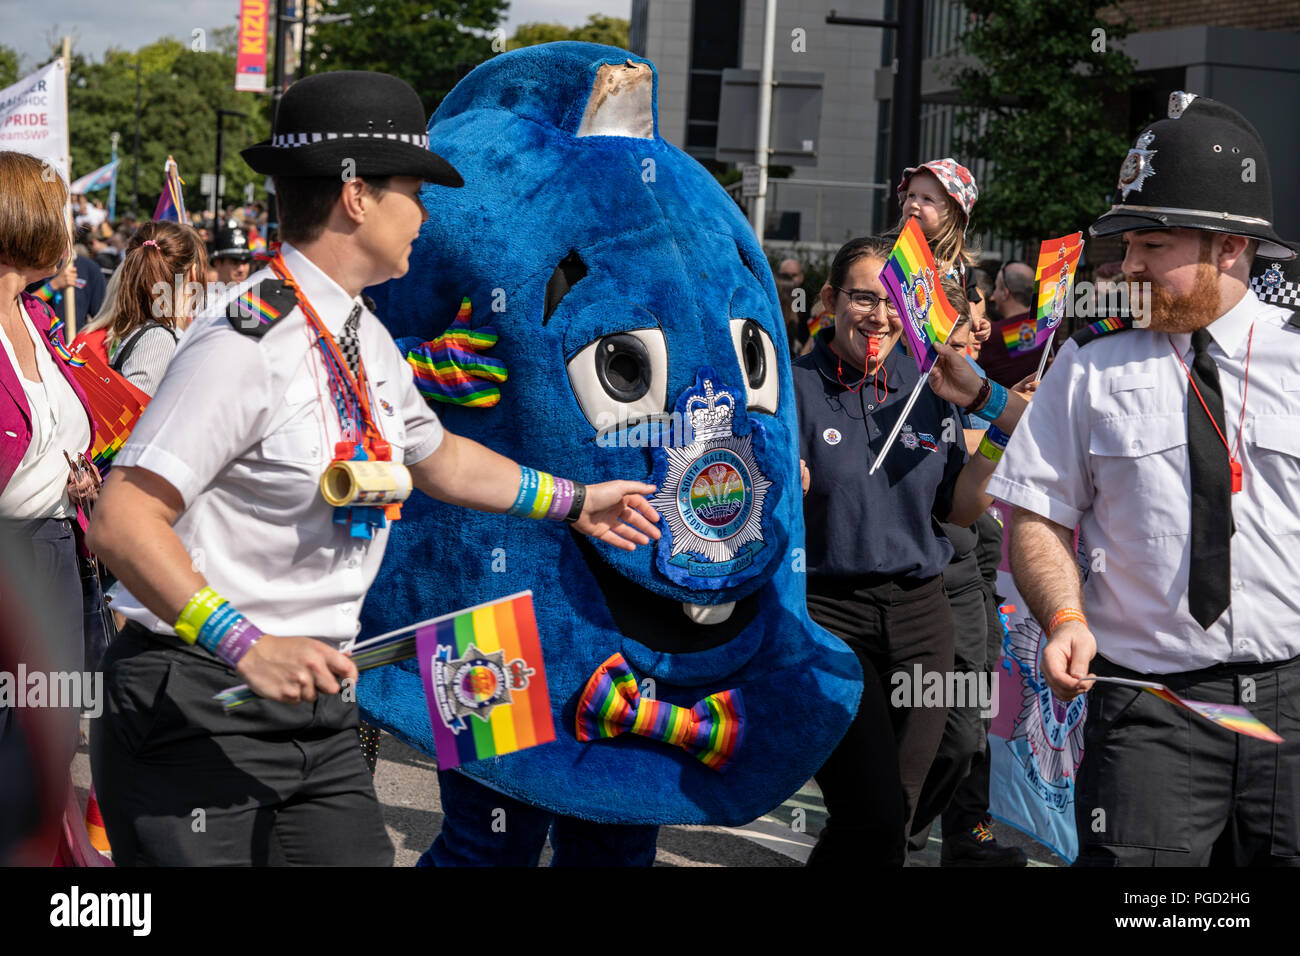 Cardiff, Pays de Galles, le 25 août, 2018 agents de police:participer à l'assemblée annuelle Pride Parade Cymru à Cardiff au Pays de Galles le 25 août 2018 ©Daniel Damaschin Crédit : Daniel Damaschin/Alamy Live News Banque D'Images